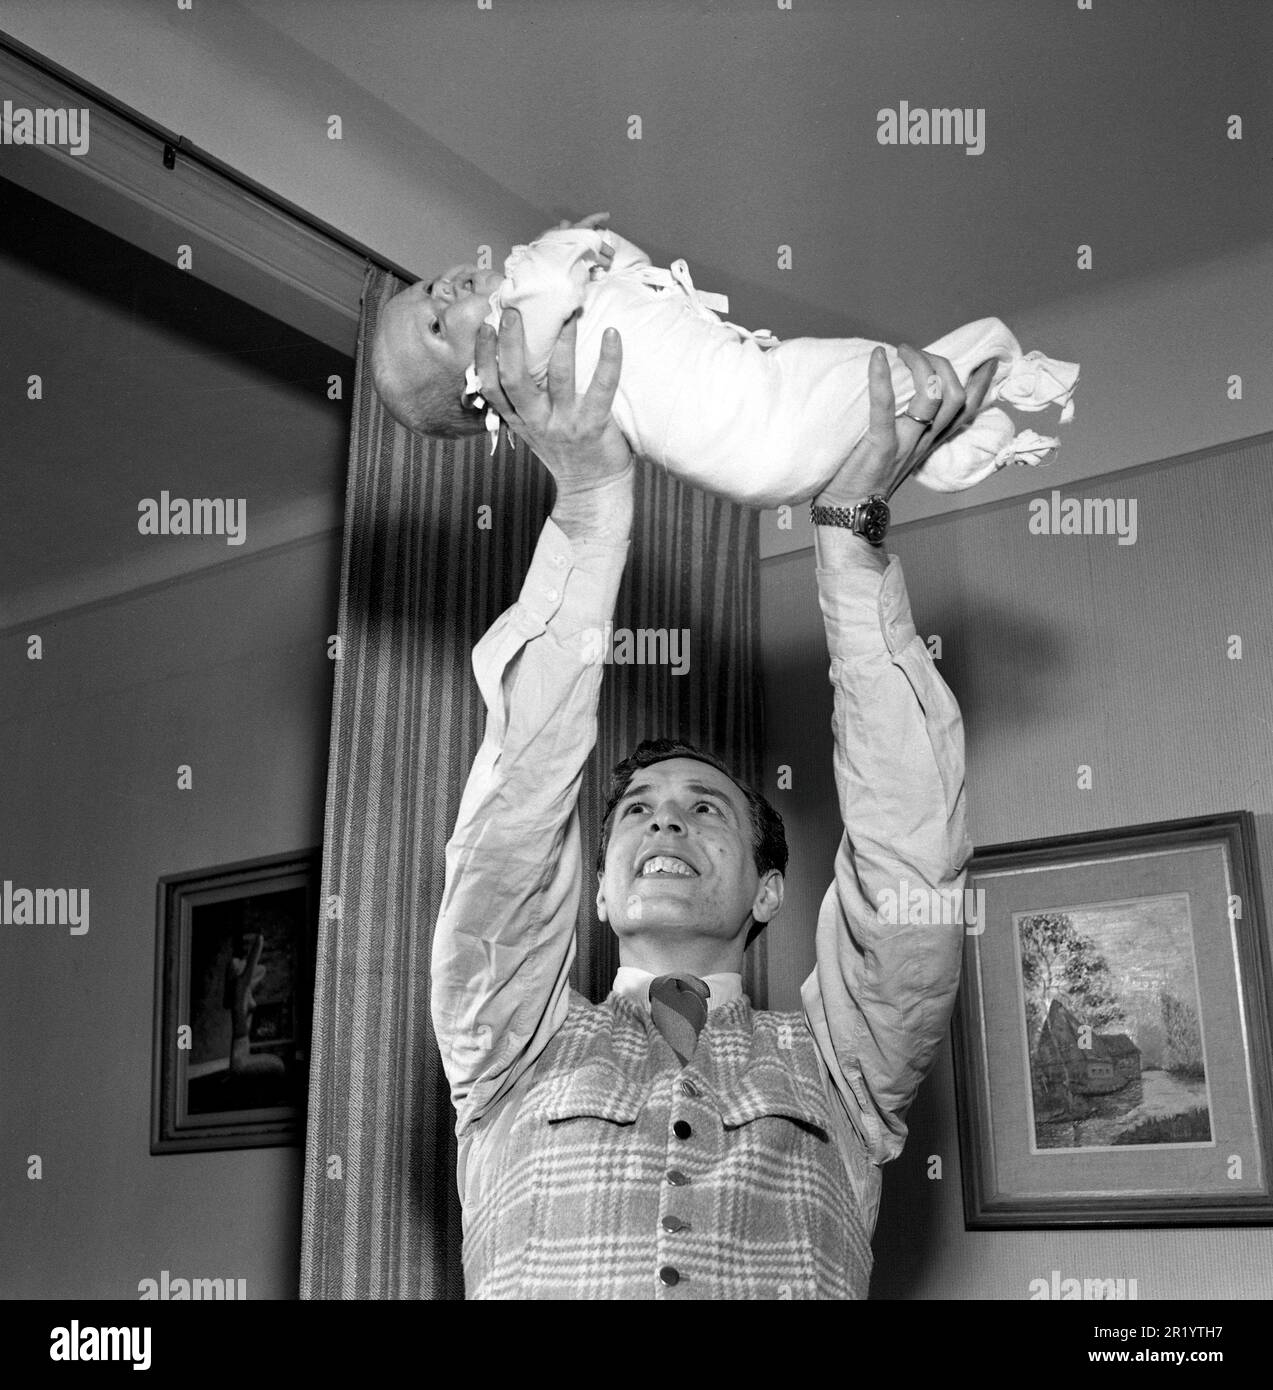 Homme du 1950s. Le danseur suédois Mario Mengarelli lors d'une séance photo à domicile avec son nouveau-né qu'il tient dans les mains au-dessus de sa tête. Suède 1952 réf. 1958 Banque D'Images